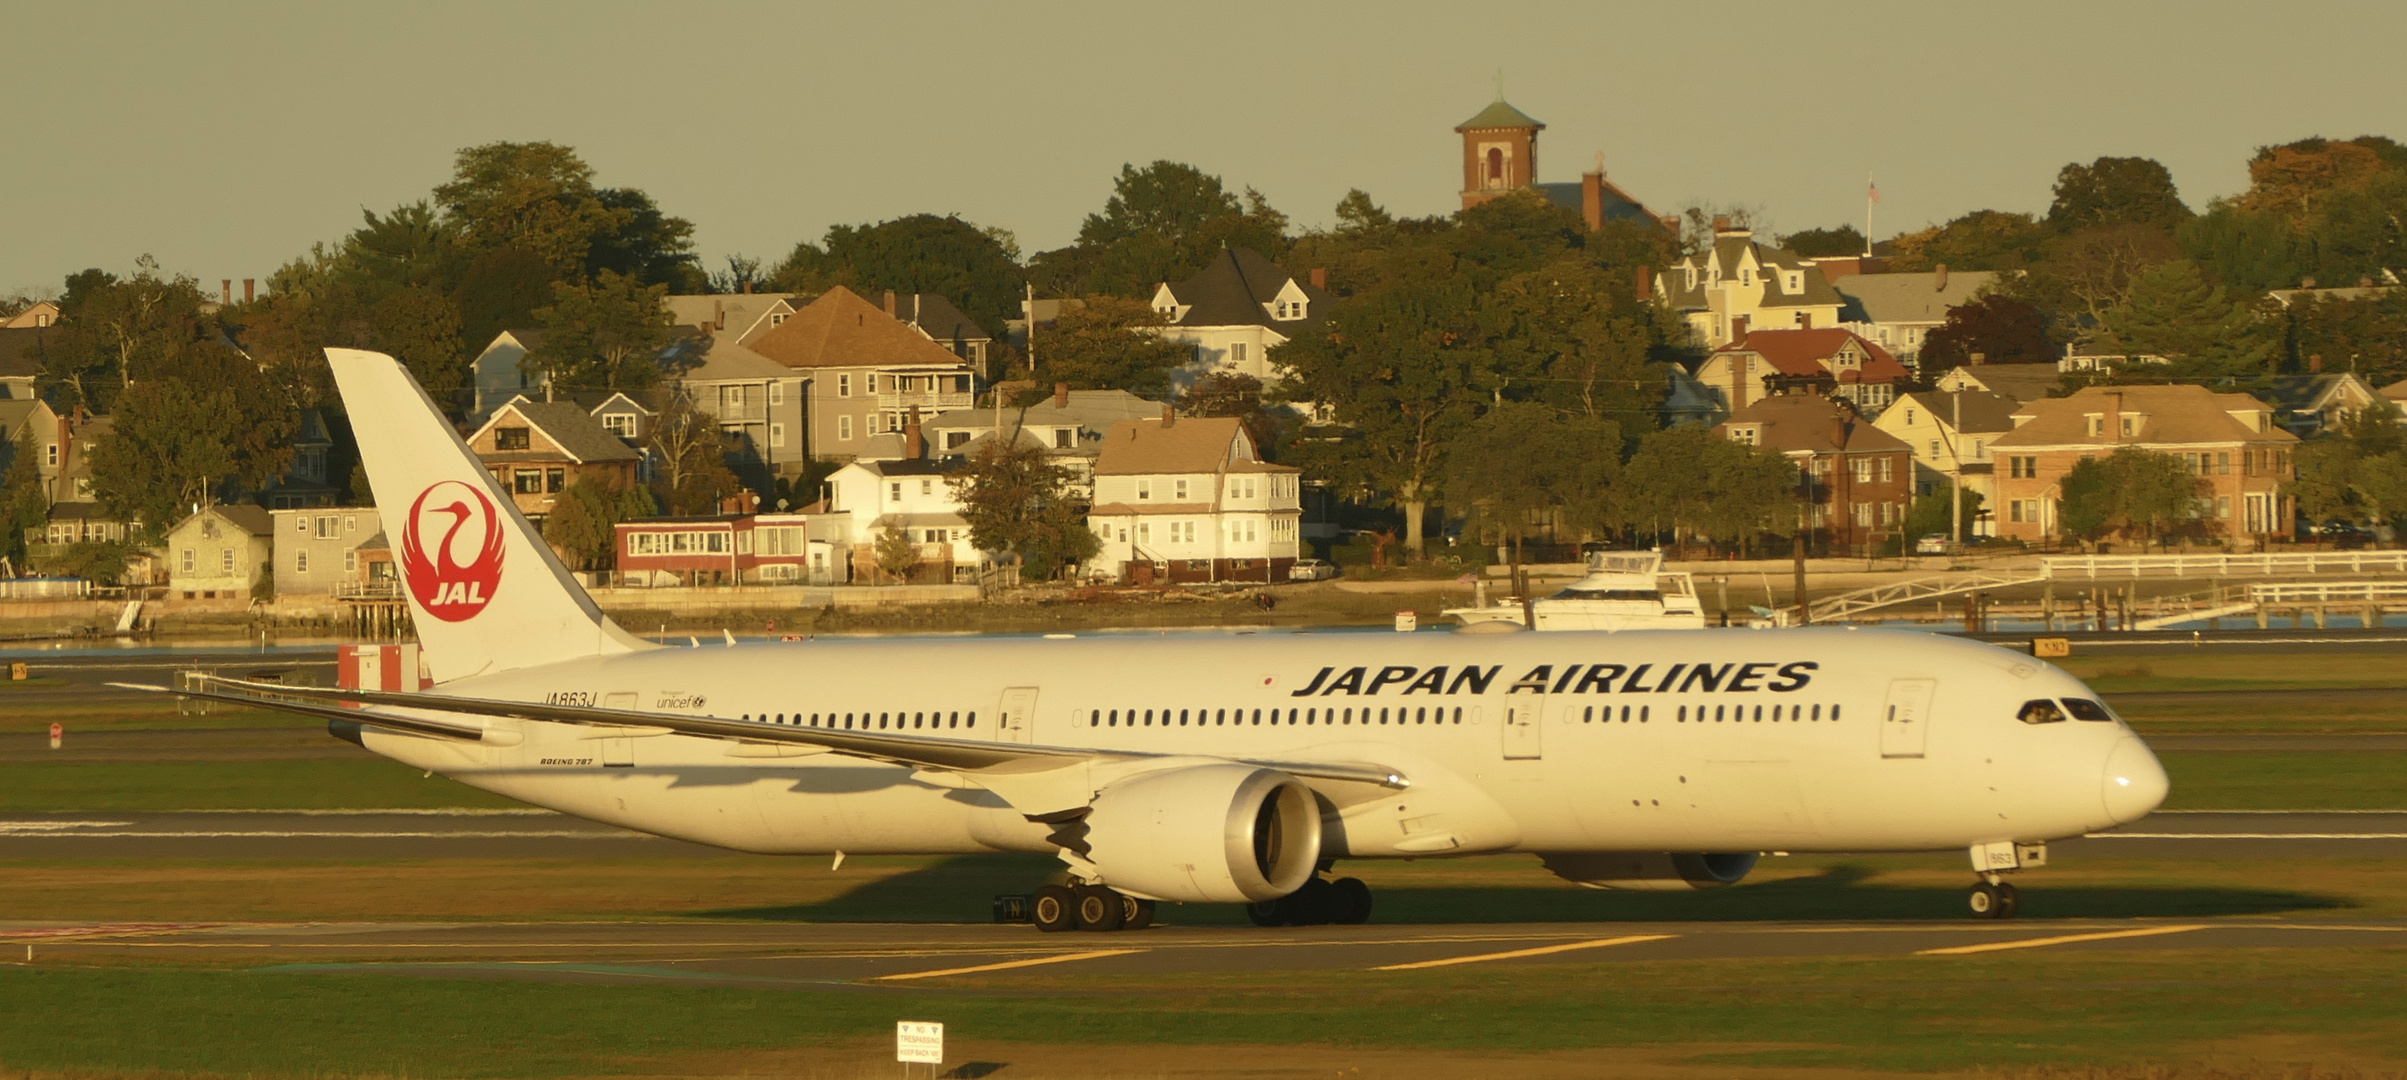 B787 der Japan Airlines